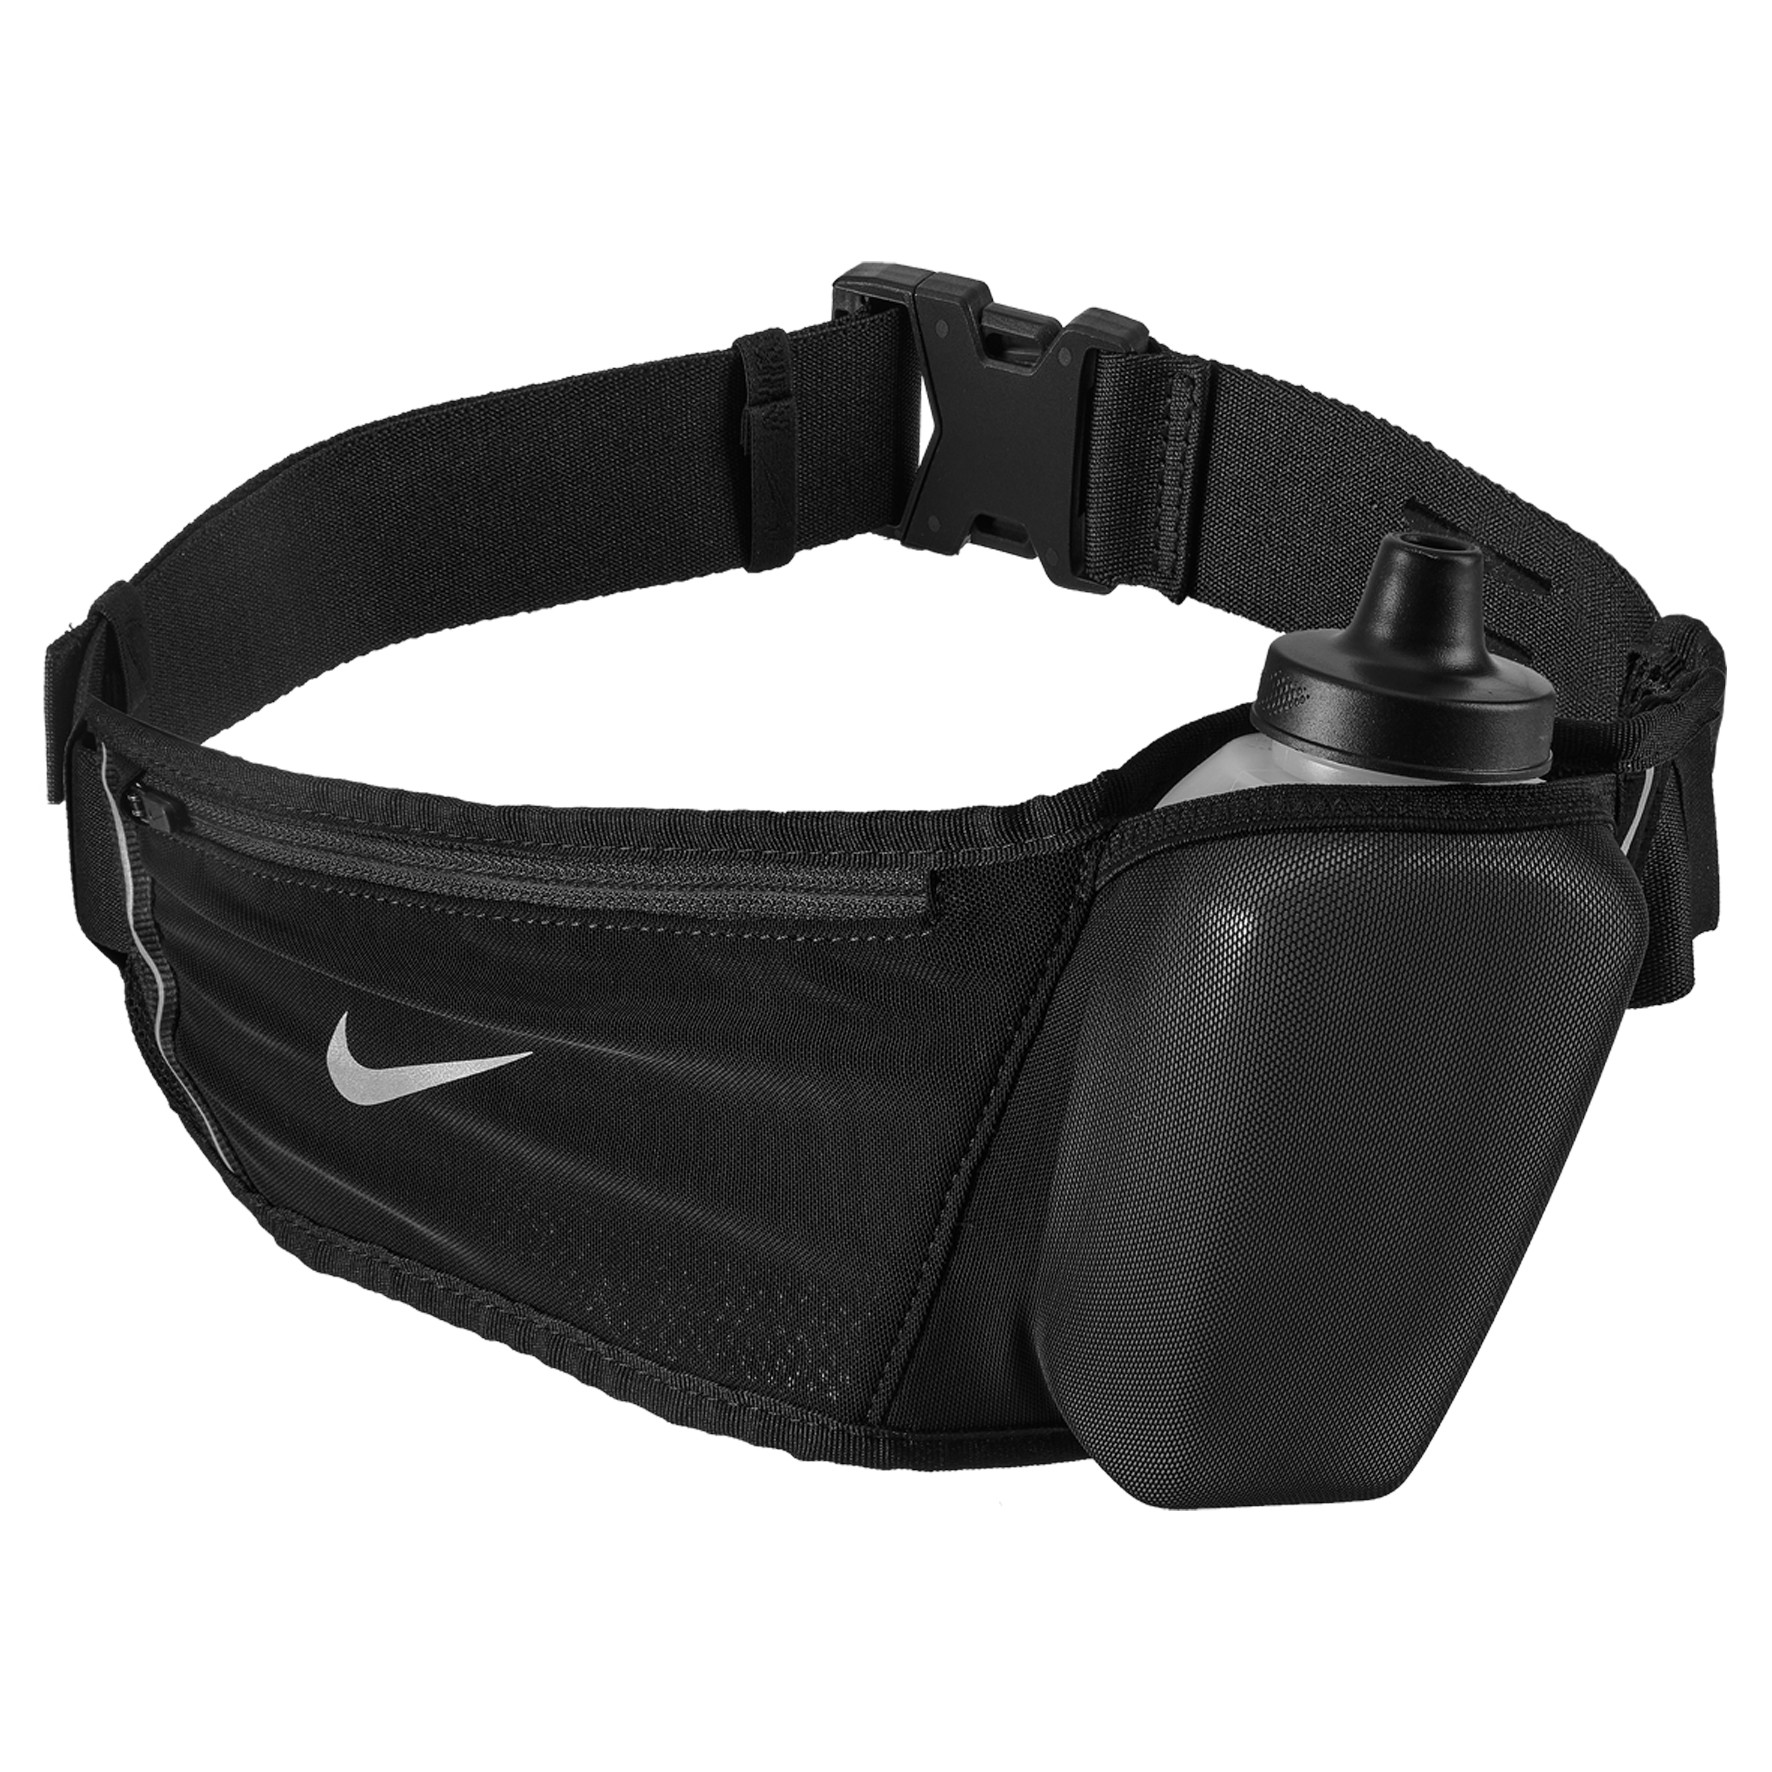 Produktbild von Nike Flex Stride Trinkgürtel 12 oz / 354 ml - schwarz/schwarz/silber 082